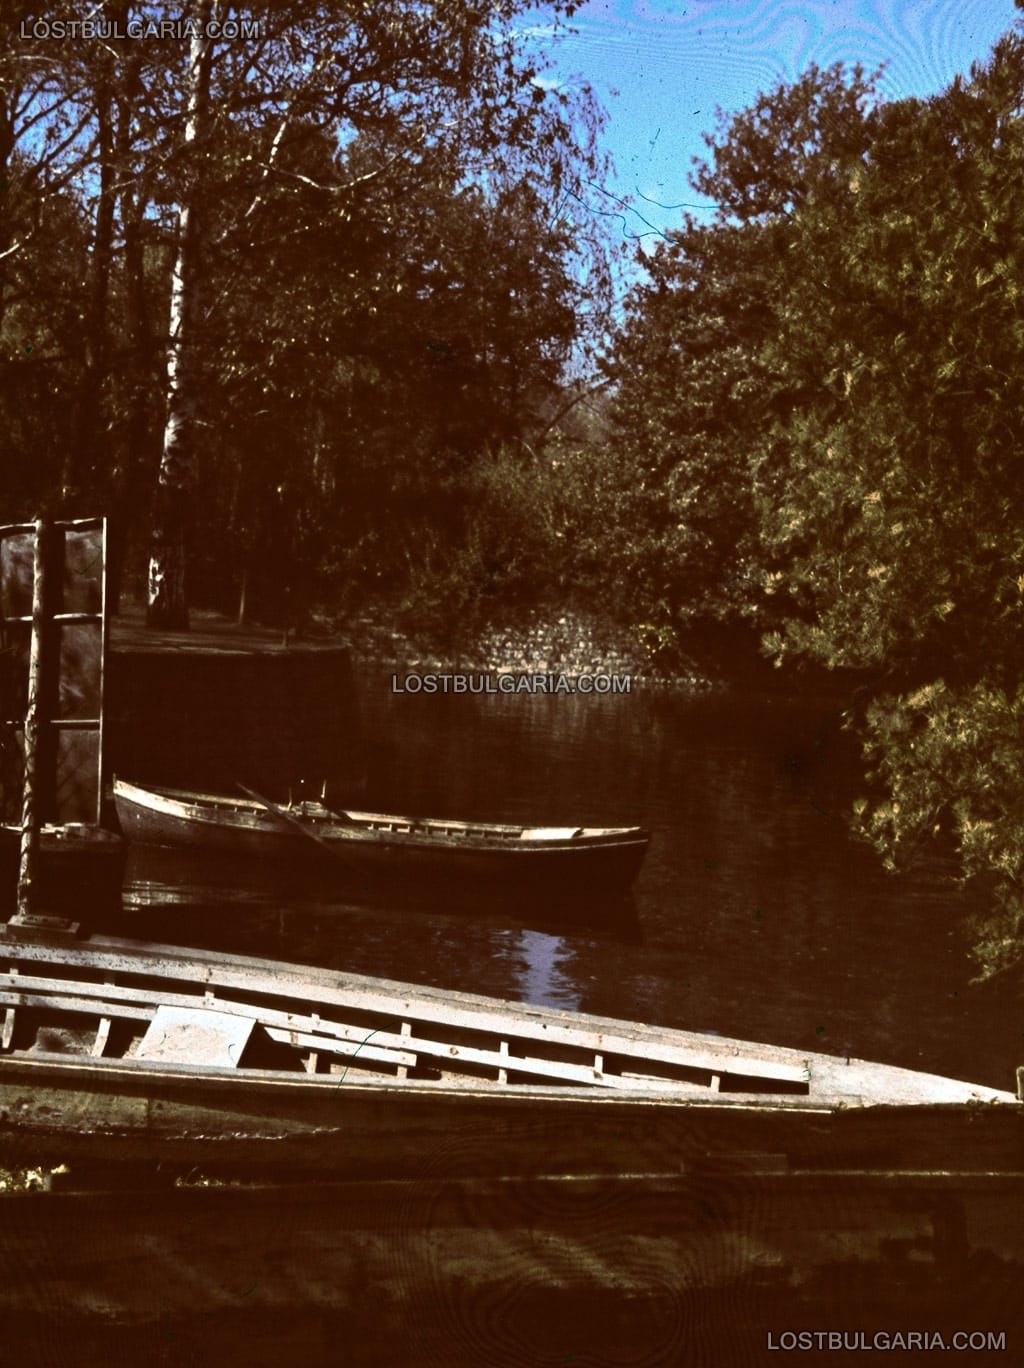 София, Борисовата градина, лодки за разходка в езерото "Ариана", най-близката е наречена "генер. Хр. Луков", цветен диапозитив AGFA, около 1943 г.